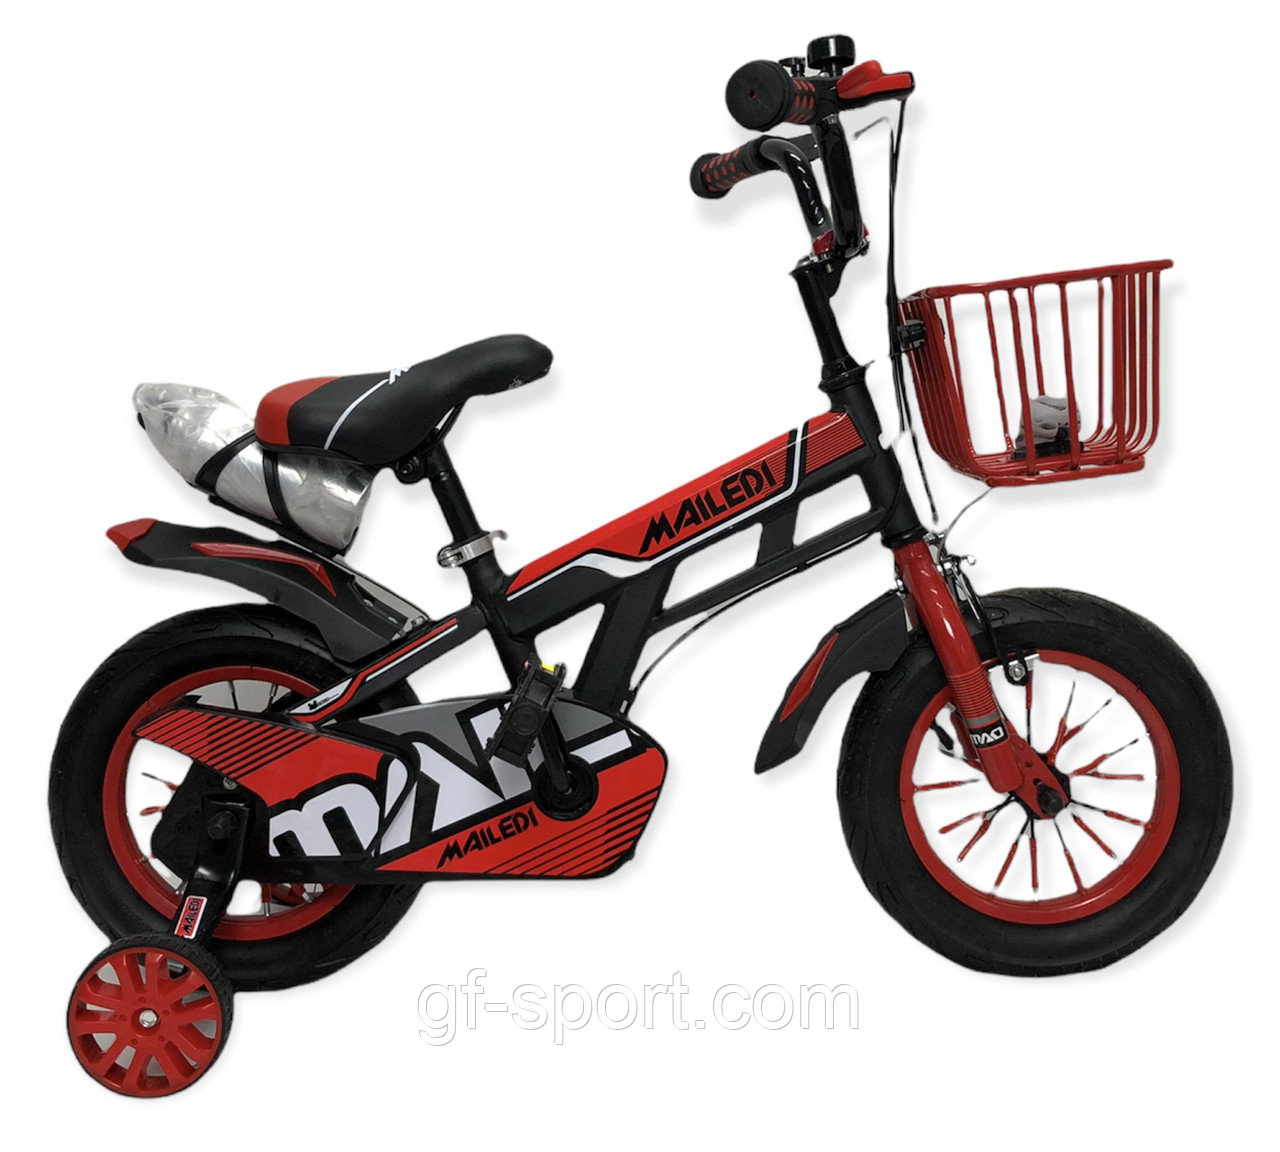 Велосипед Mailedi красный оригинал детский с холостым ходом 12 размер (506-12)